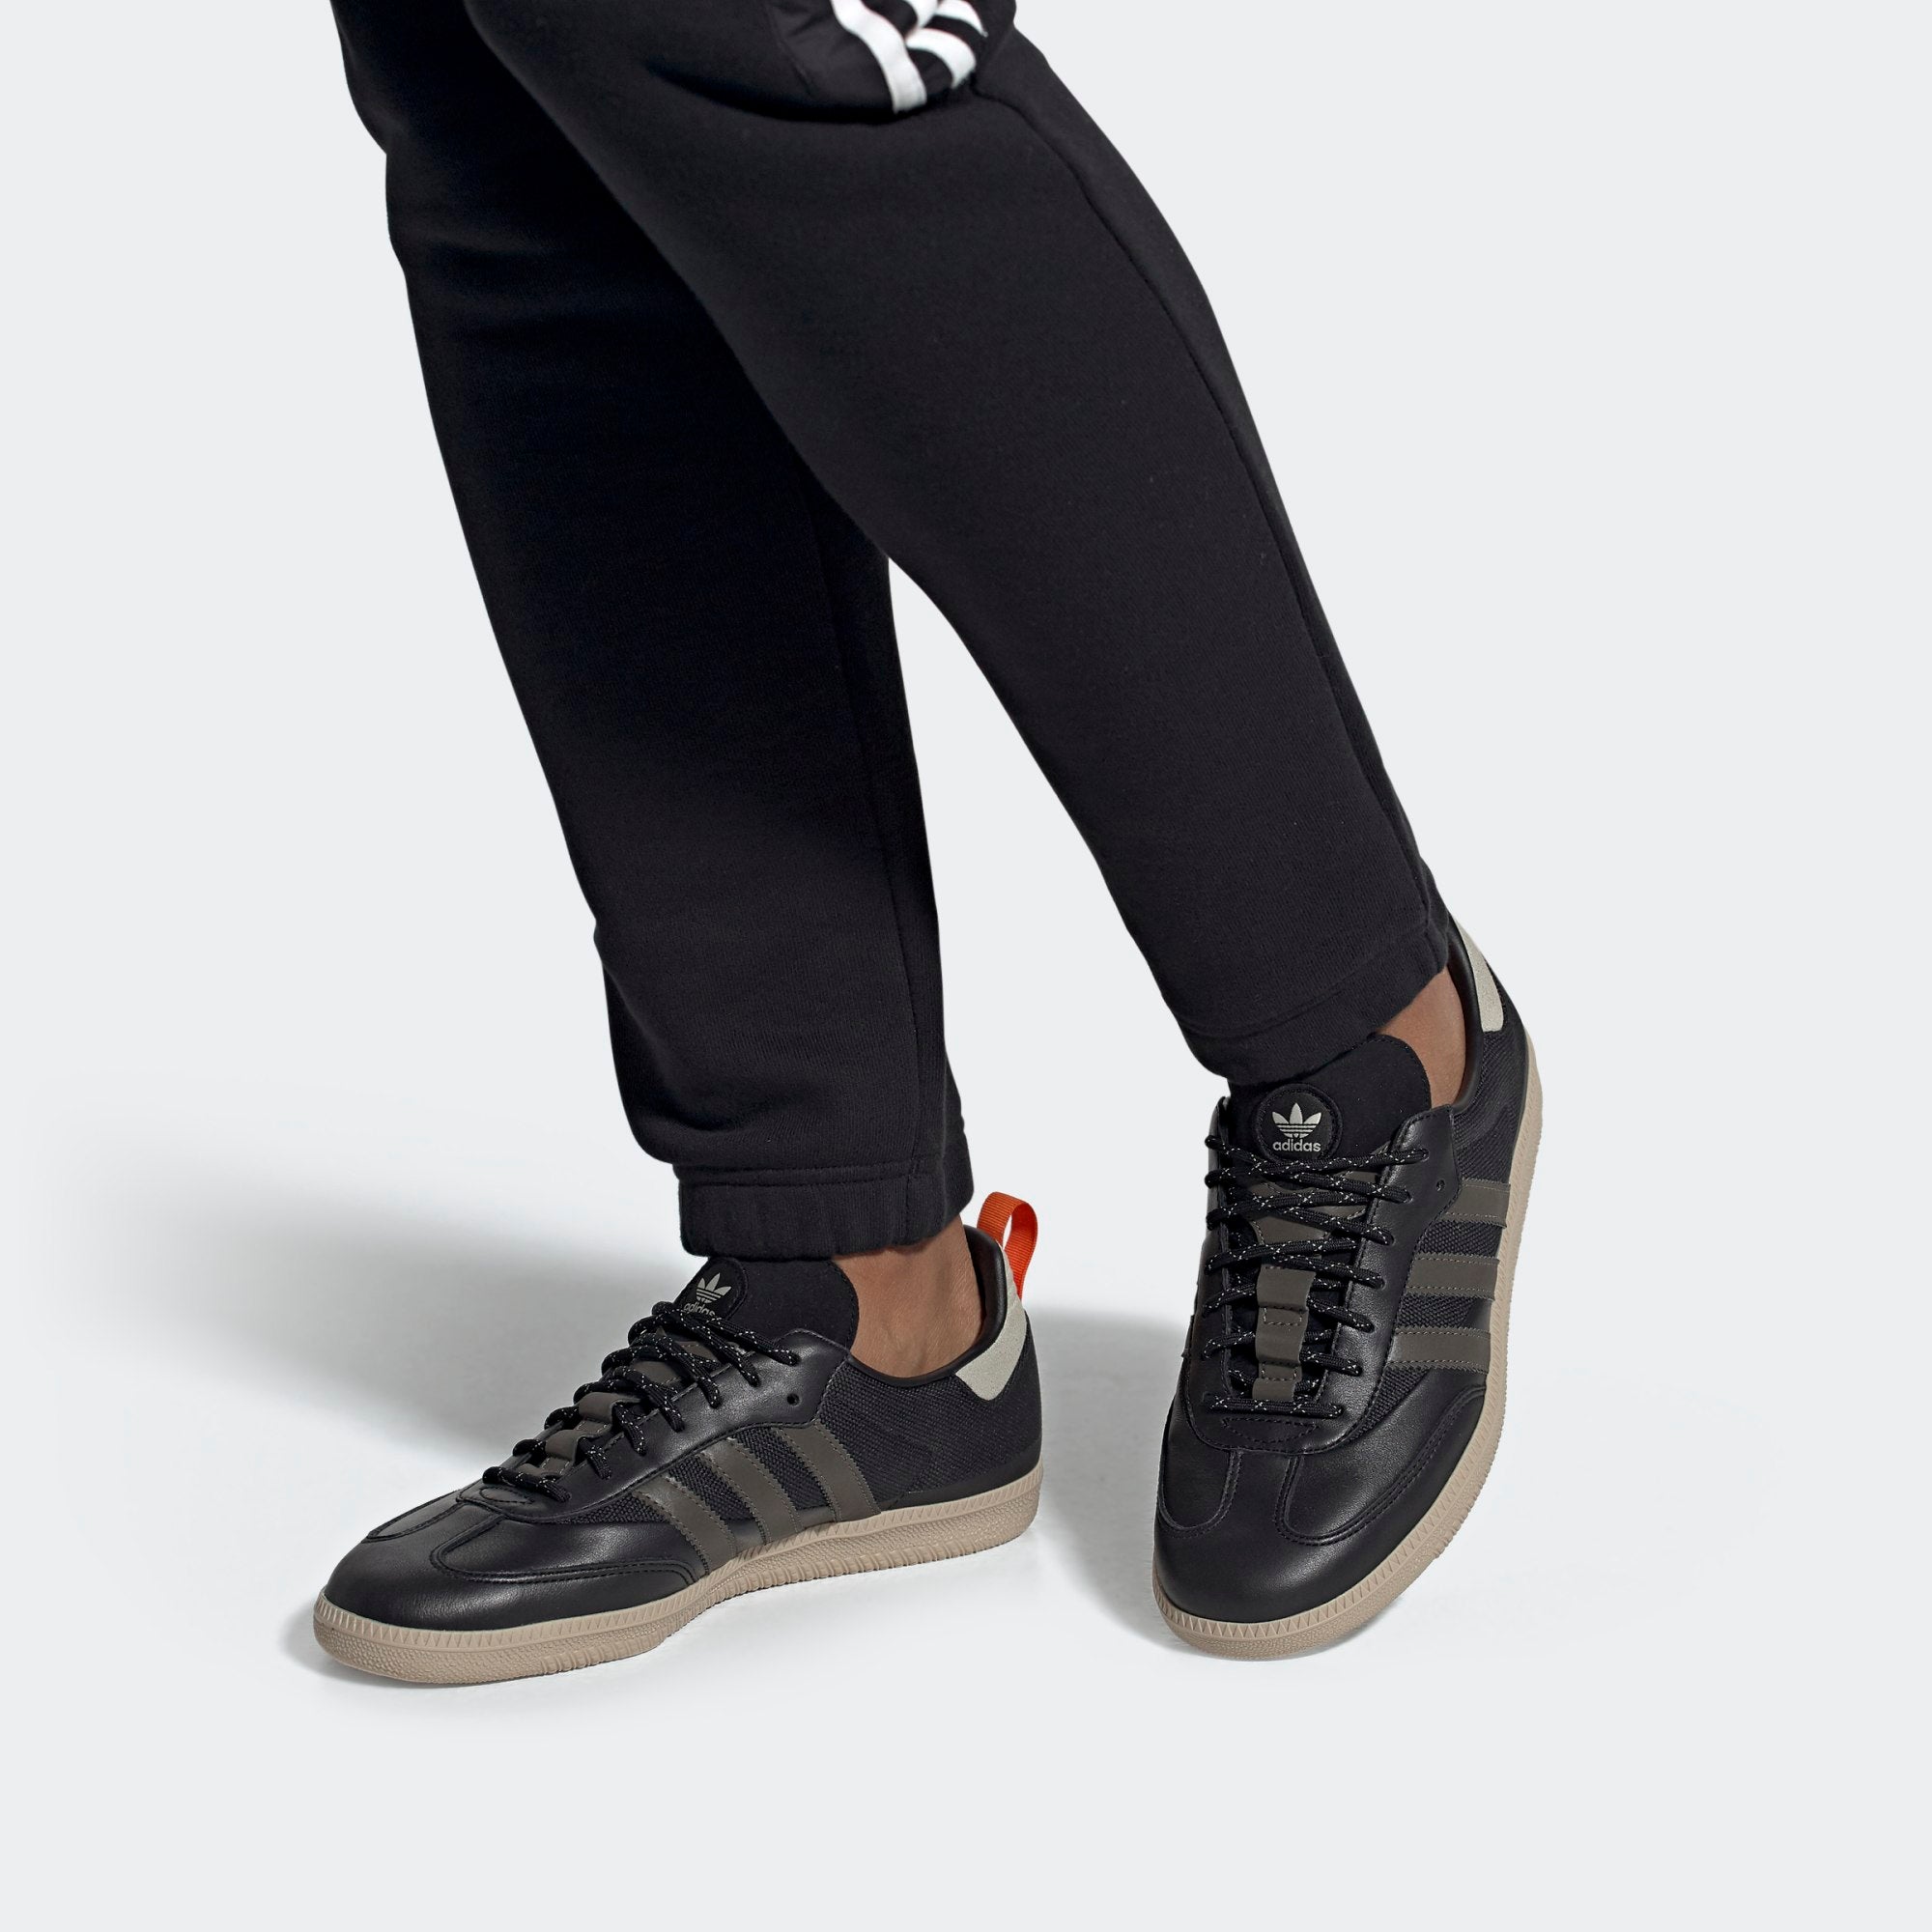 adidas samba og shoes black